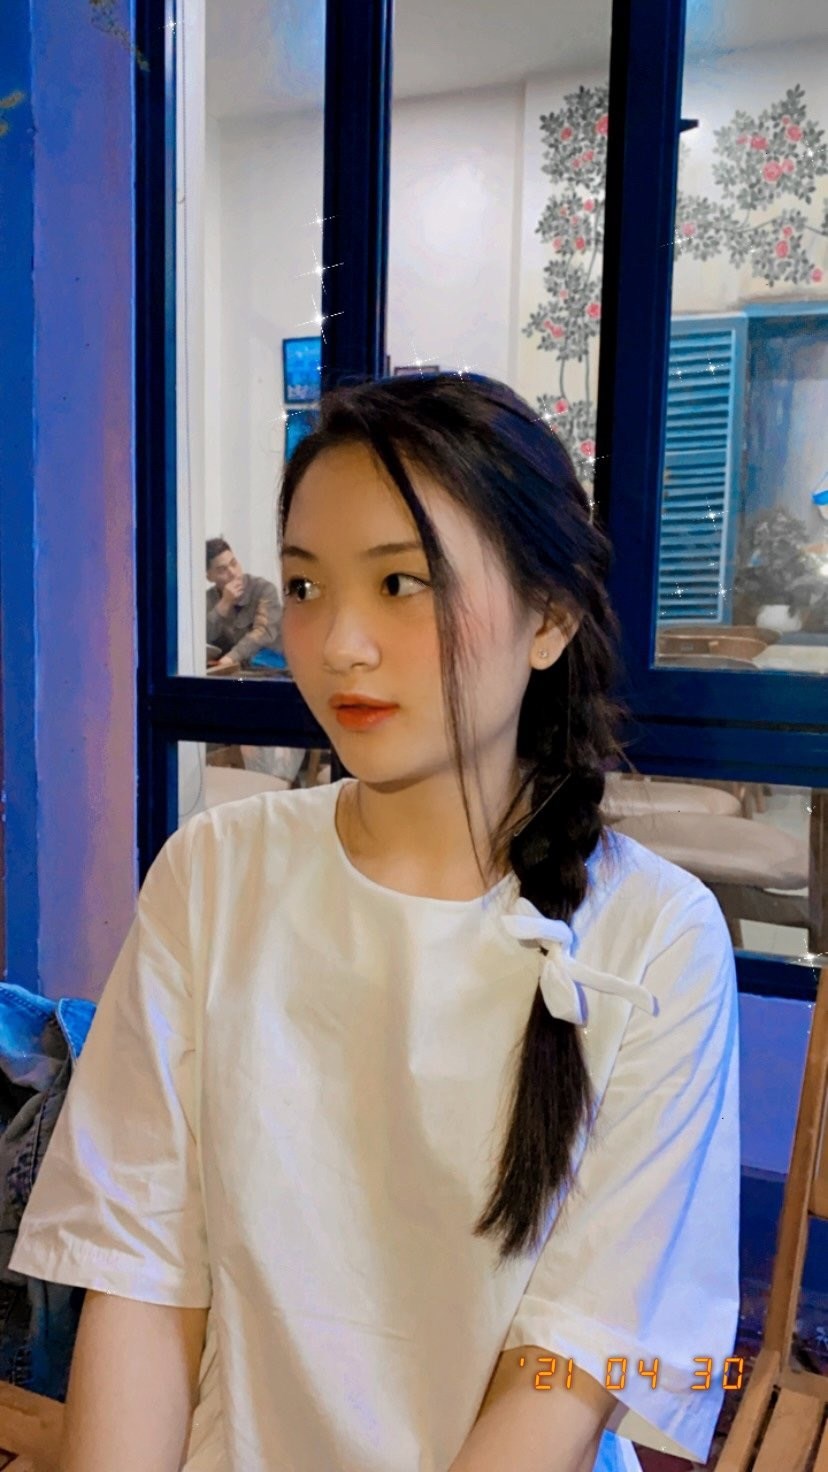 Nữ sinh Đại học Quốc gia Hà Nội đăng quang Hoa hậu Việt Nam Thời đại 2022 - ảnh 8